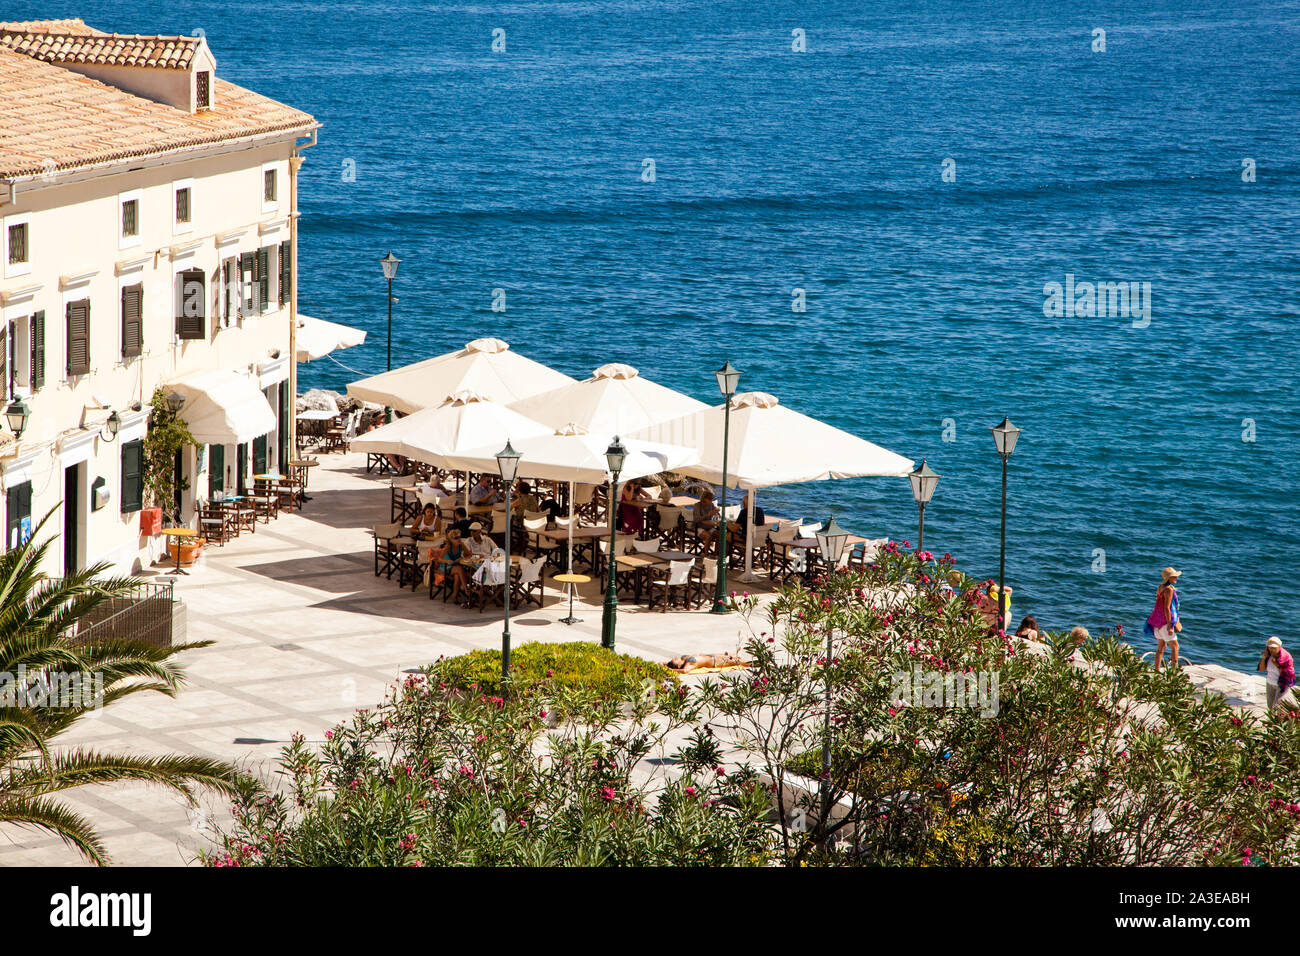 Blick auf eine Taverne und ein Restaurant am Hafen Bereich der Stadt Korfu auf der griechischen Insel Korfu Griechenland Stockfoto